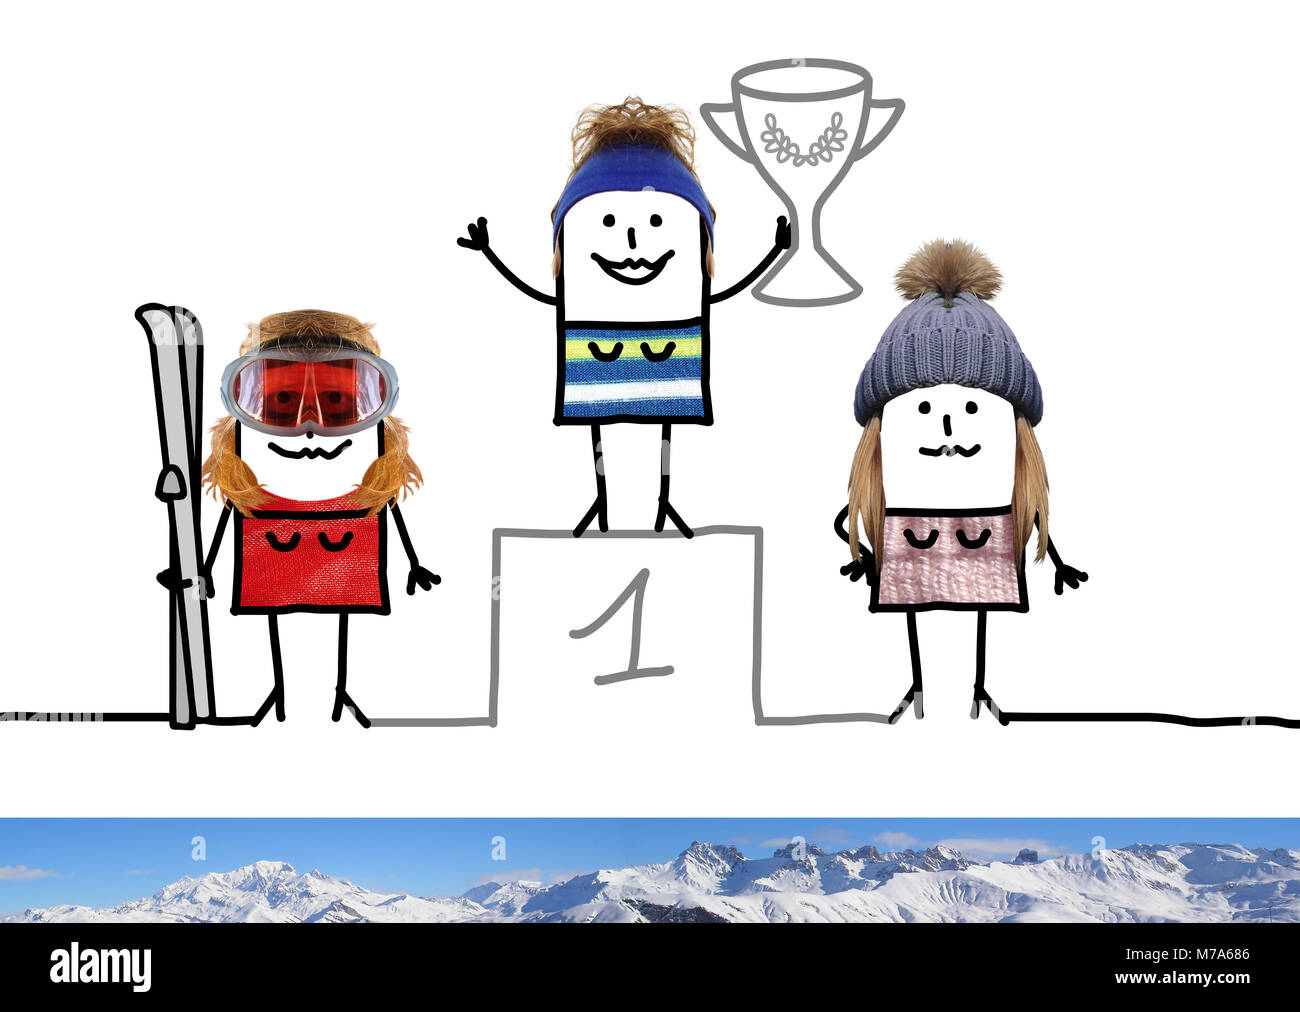 Cartoon Champion de ski fille sur le podium avec tasse Banque D'Images